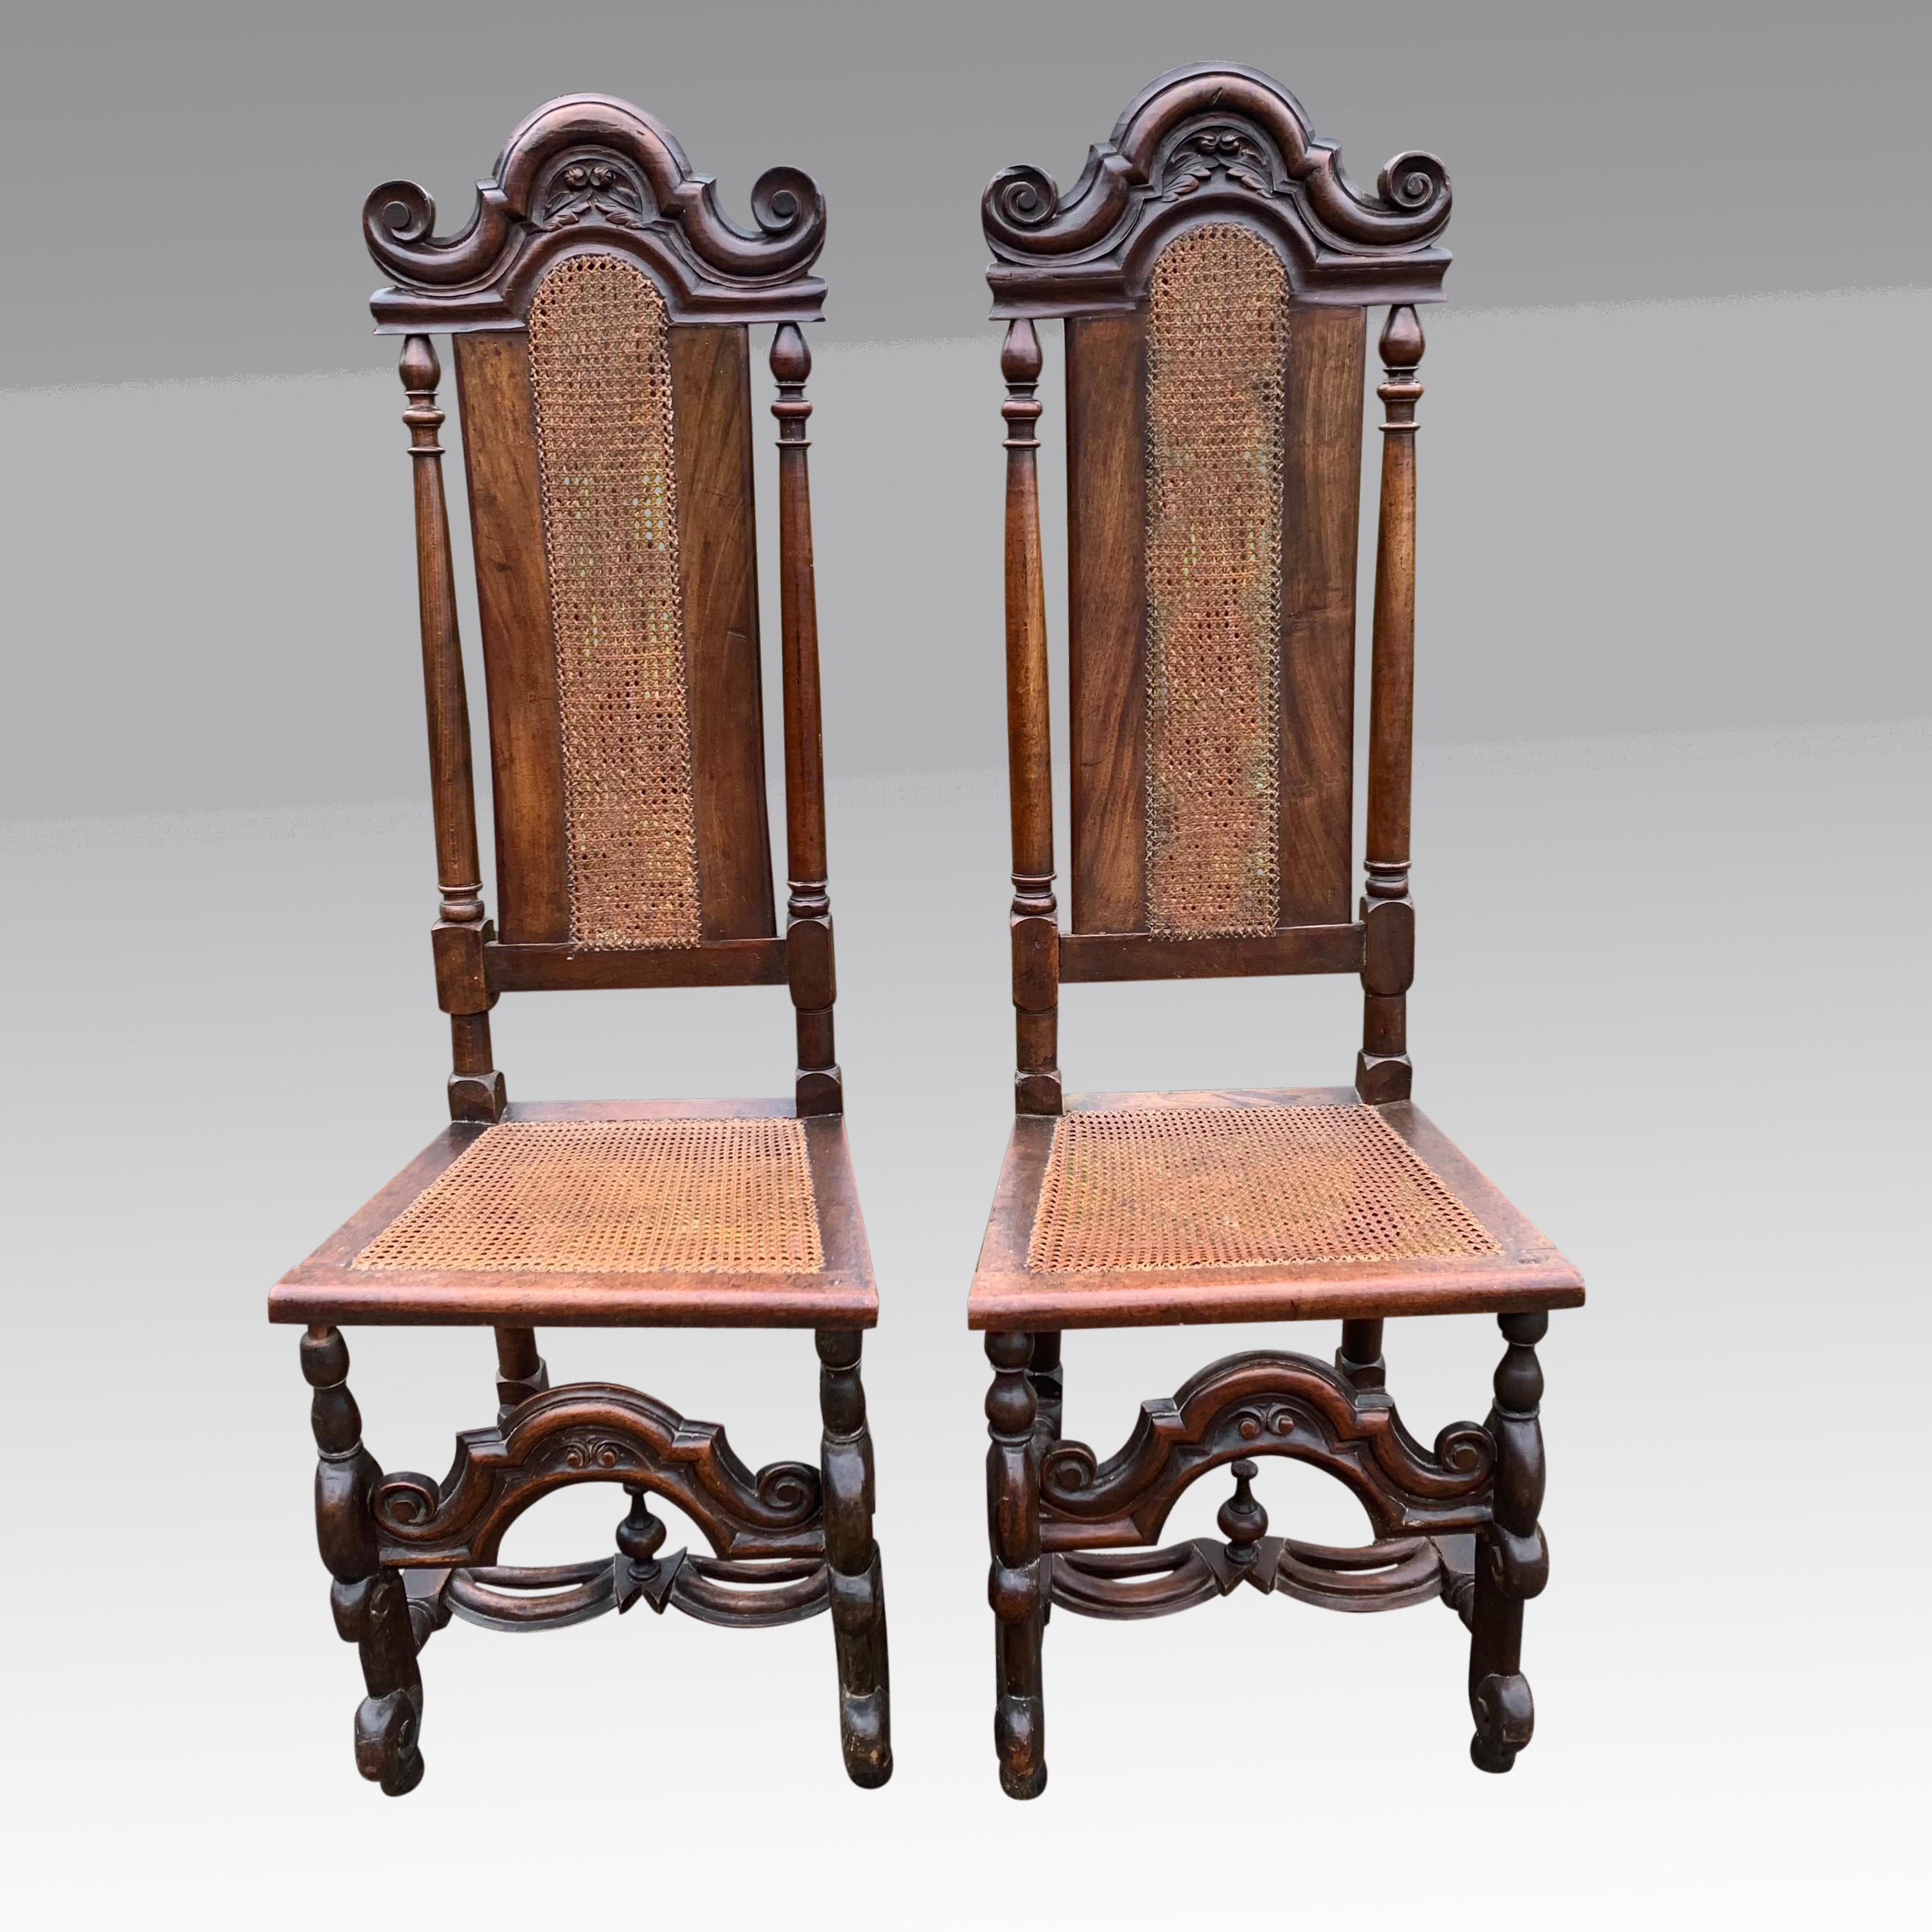 Une bonne paire de chaises de style Carolean du milieu du 19ème siècle en noyer avec des sièges et des dossiers cannelés. Les hauts dossiers sont ornés de cimaises décoratives sculptées de feuilles et de têtes de fleurs, flanquées d'extrémités à